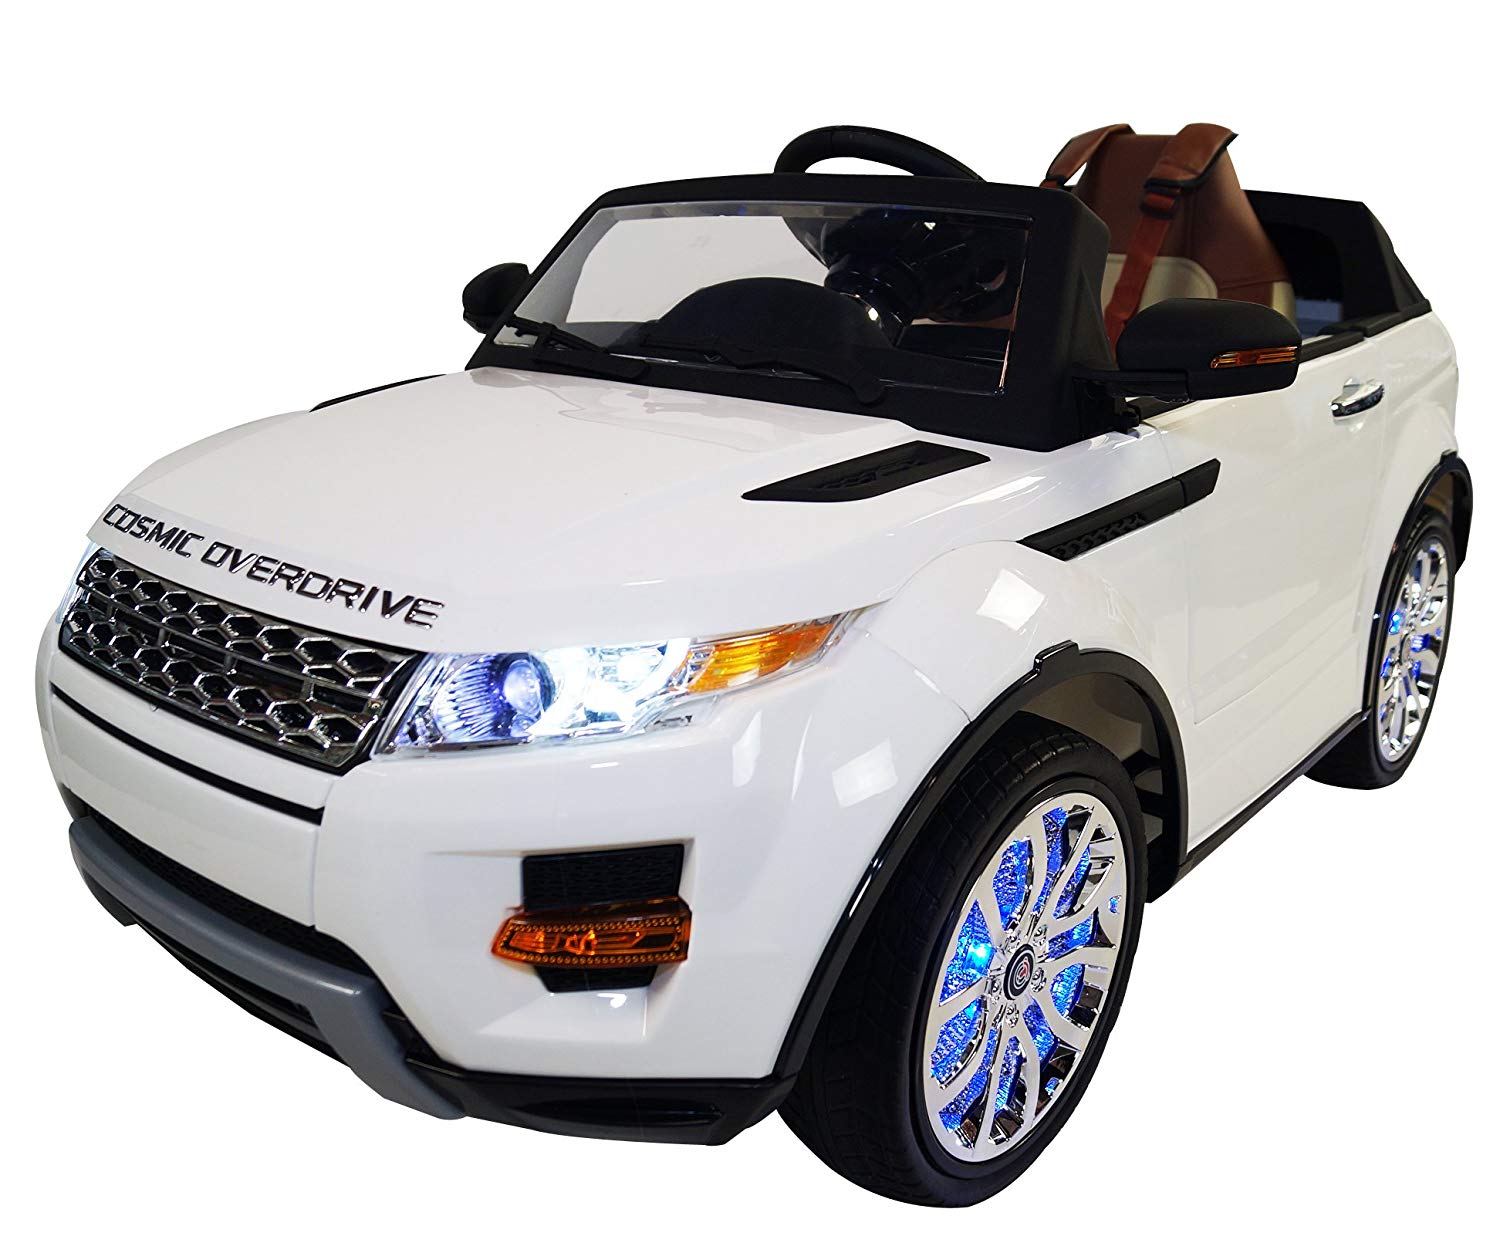 range rover kids toy